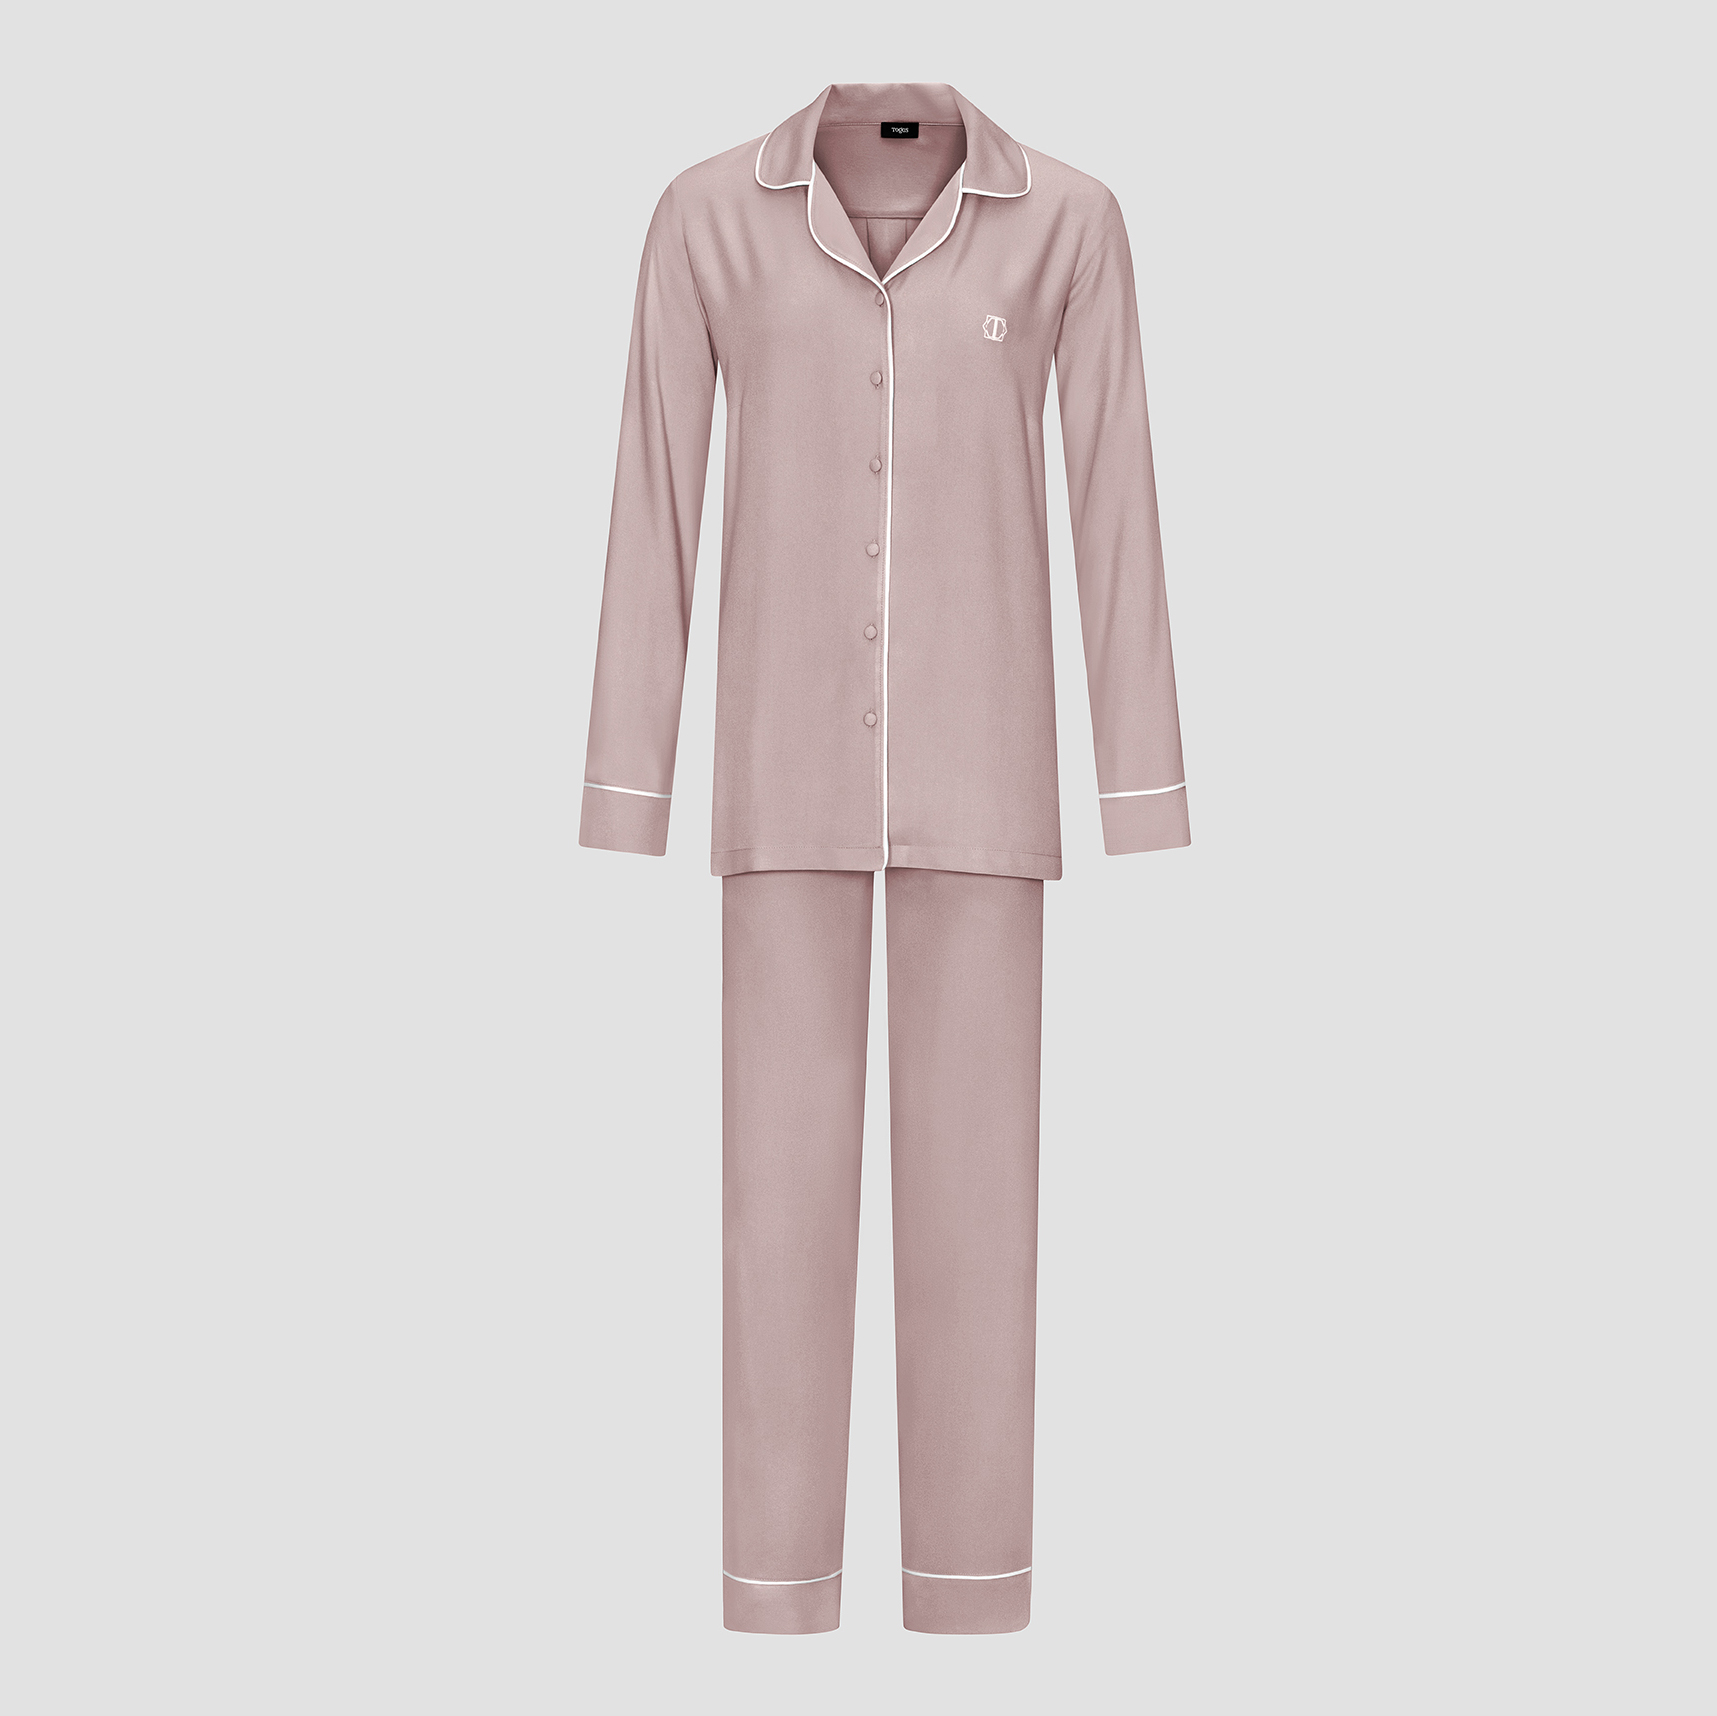 Пижама женская Togas Рамель розовая 2 предмета дет пижама зимние каникулы для девочек синий р 34